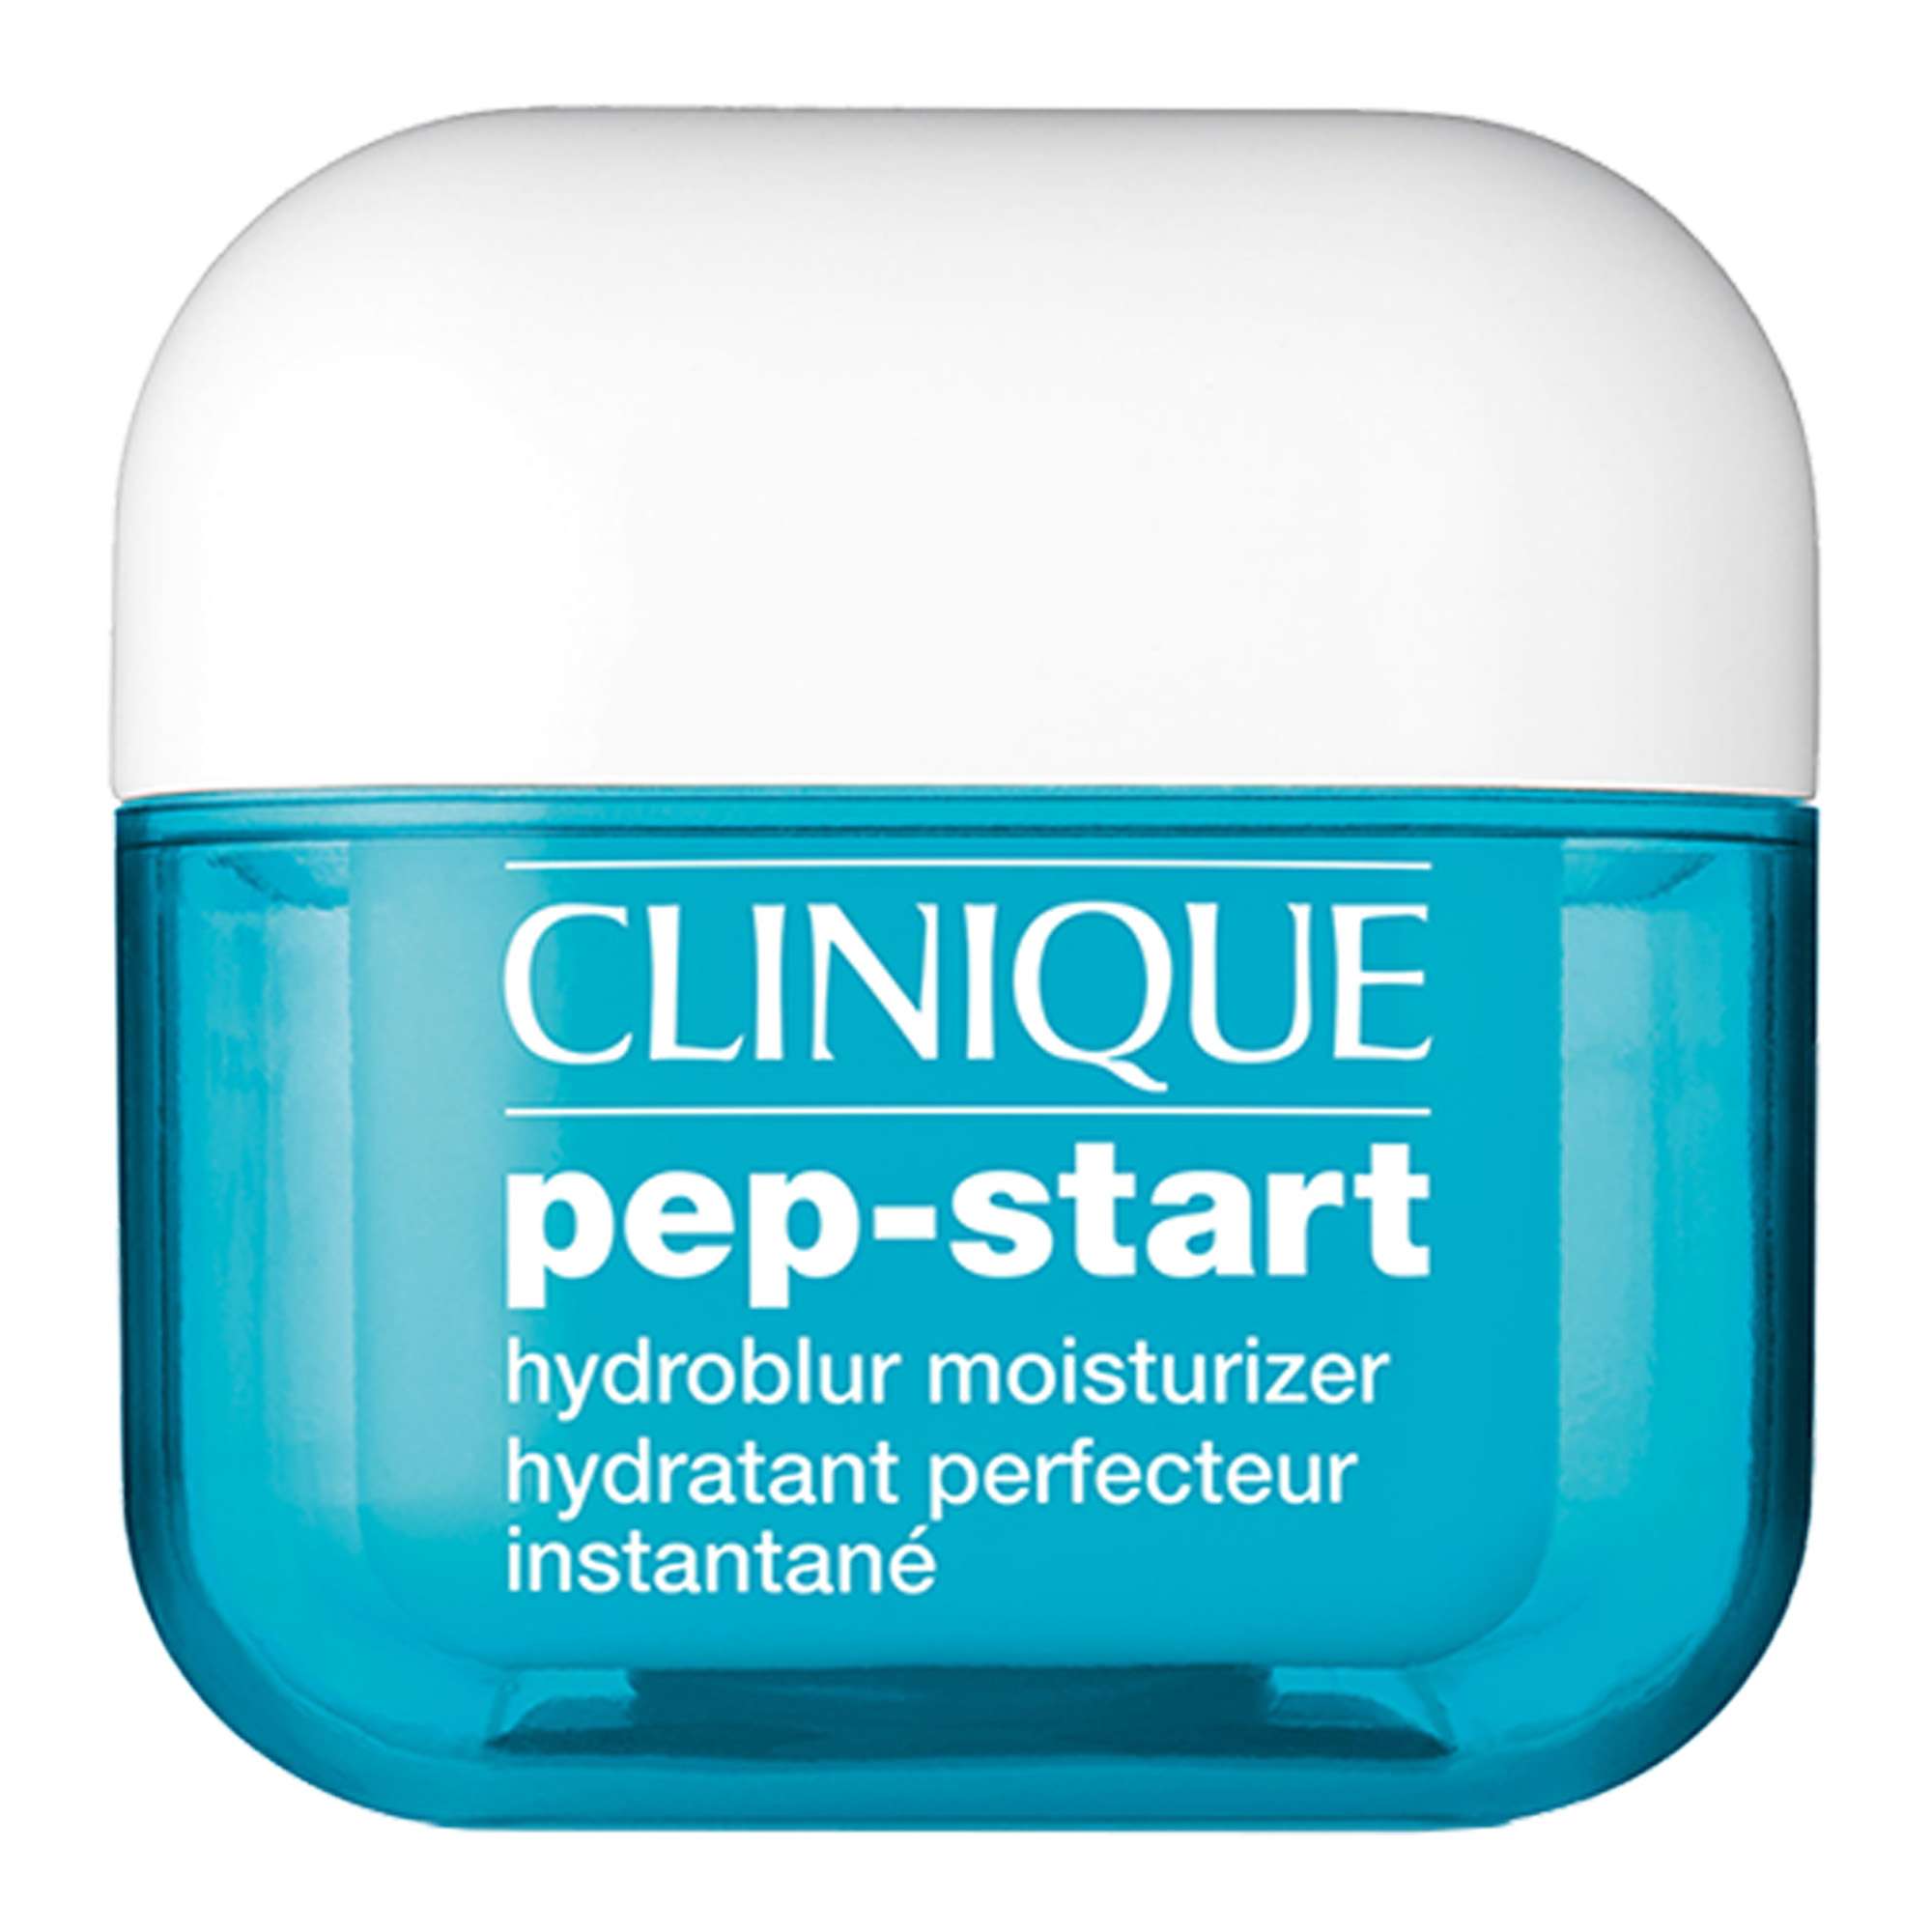 Clinique - Pep-Start Hydroblur Moisturizer 50 ml